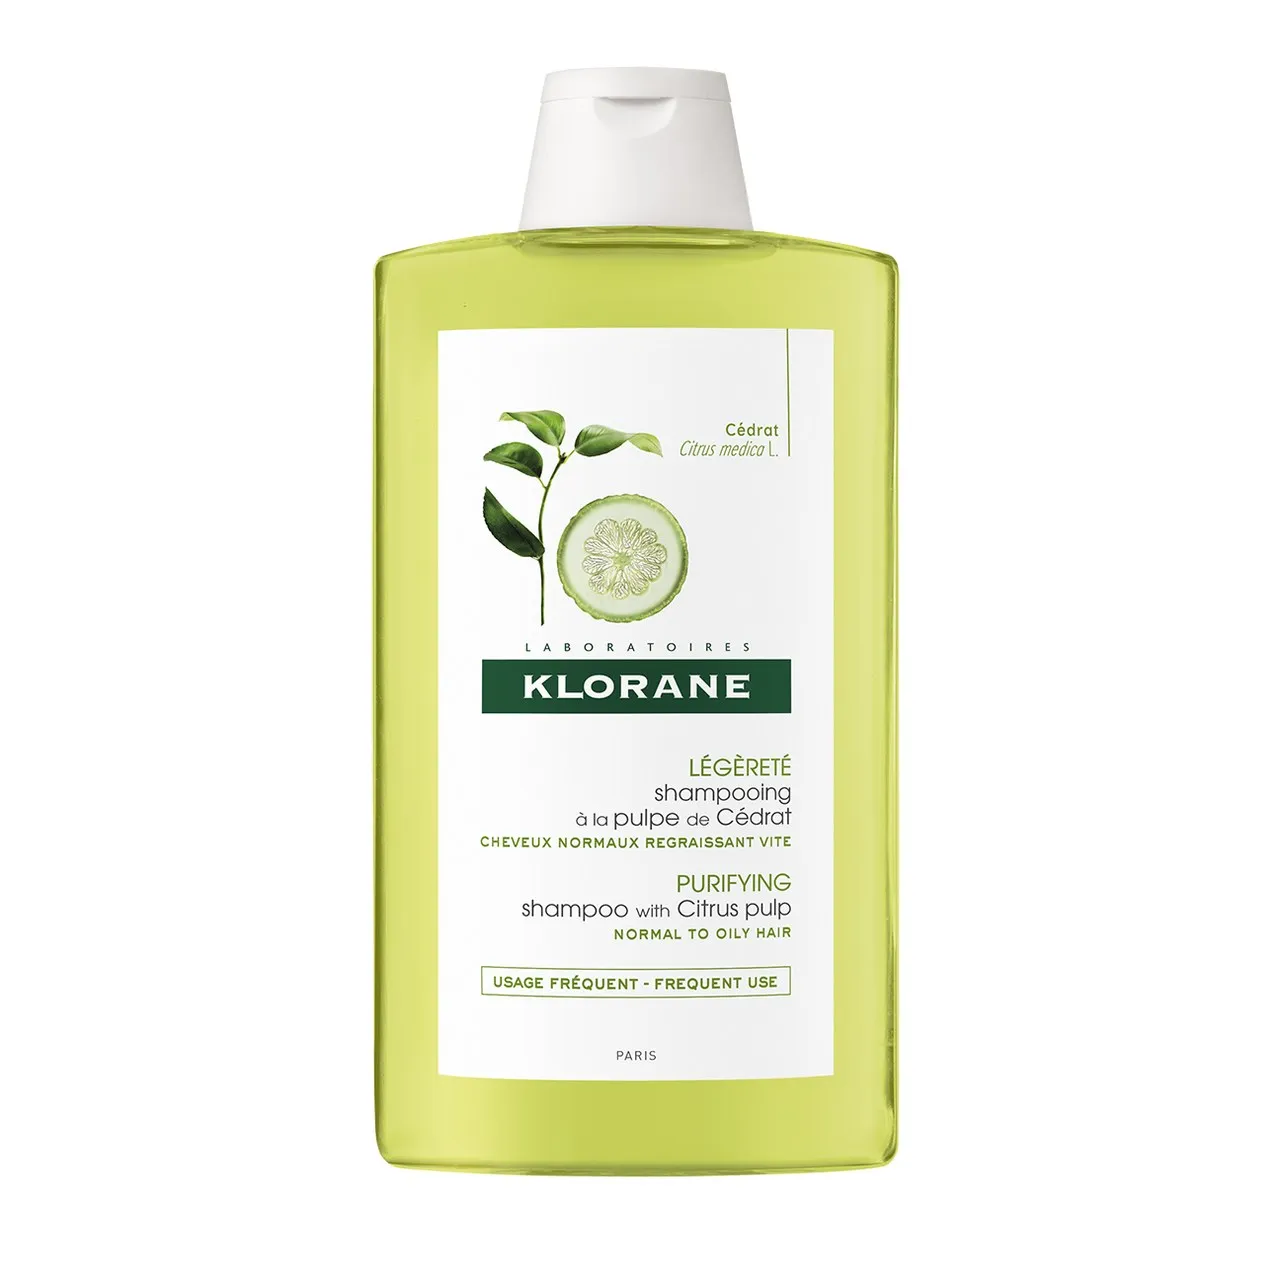 Klorane, szampon do włosów na bazie wyciągu z cedratu, 400 ml